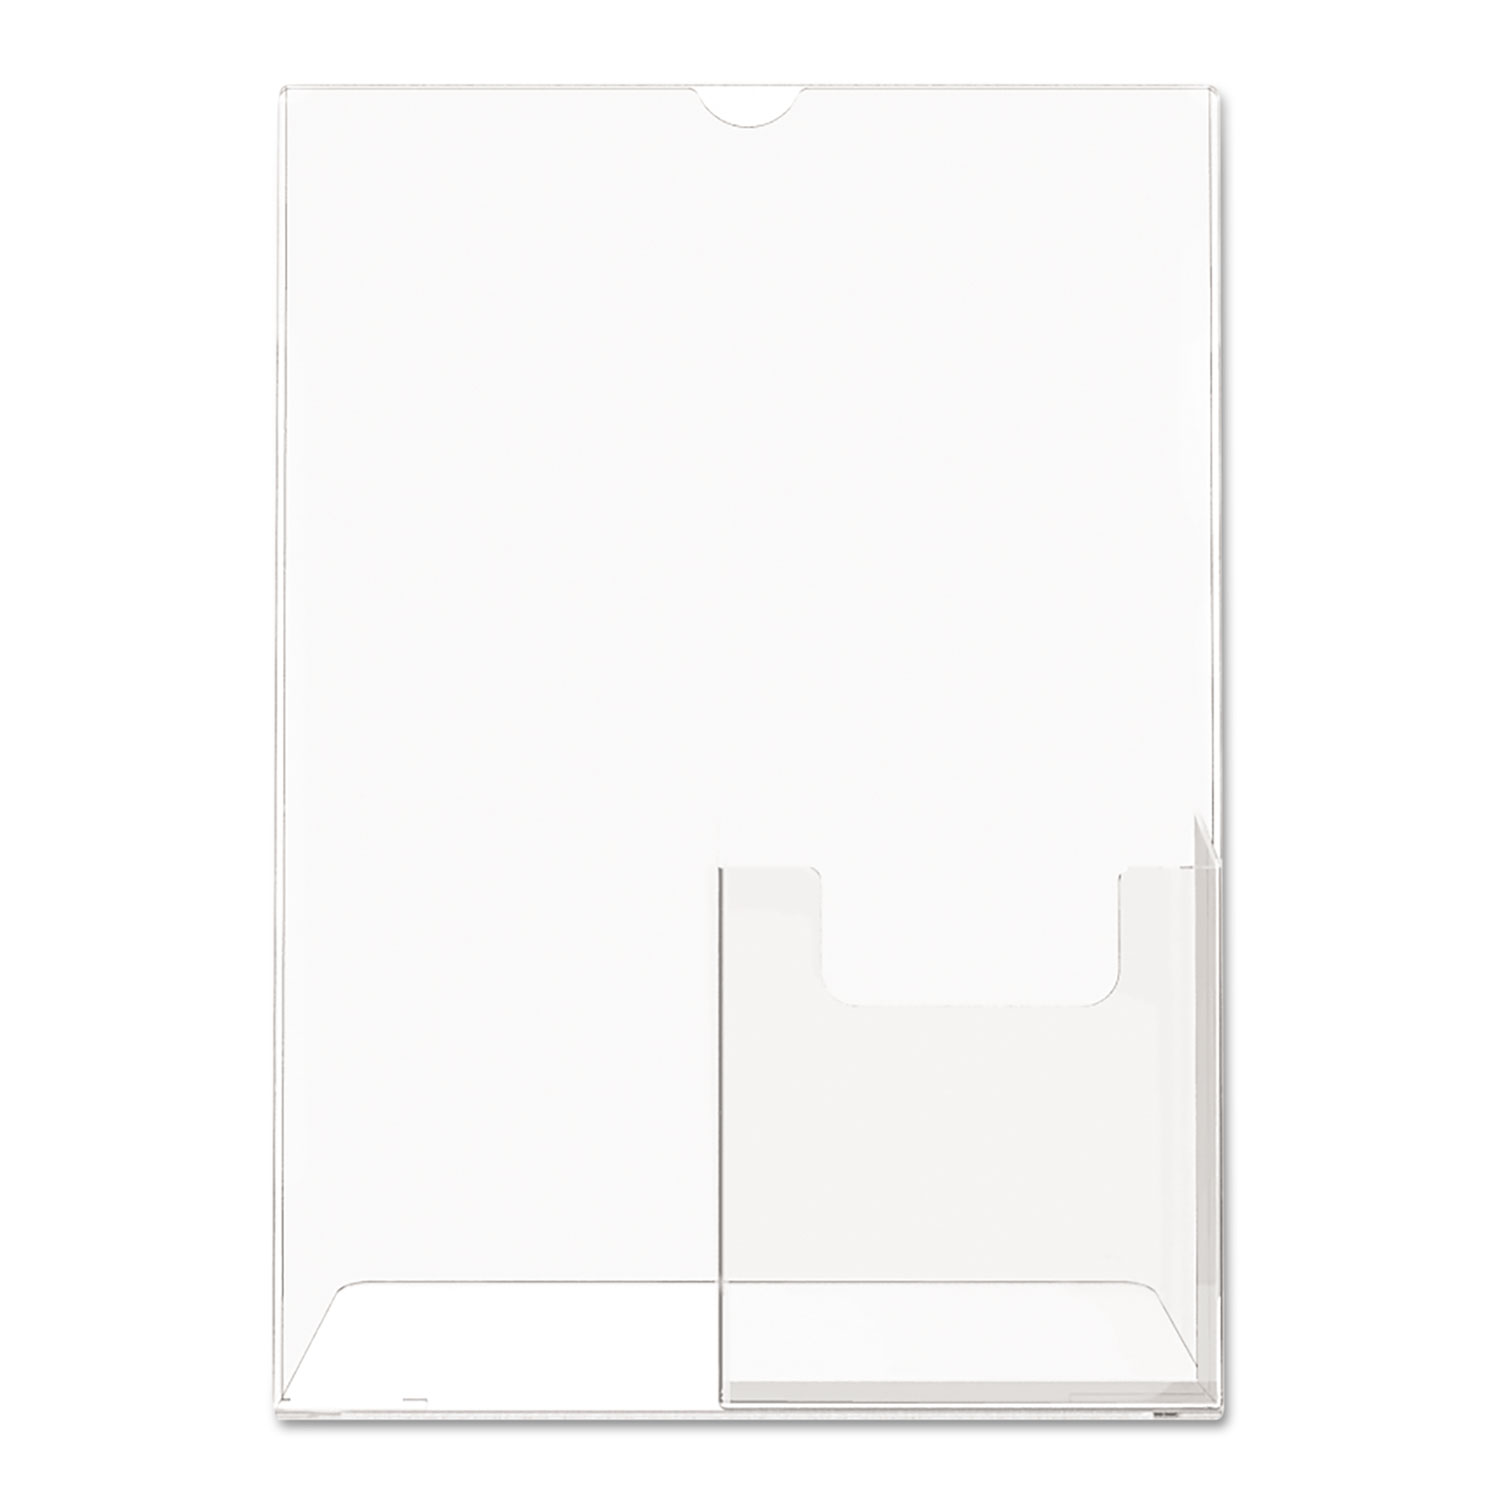 Superior Image Slanted Sign Holder w/Front Pocket, 8 1/2 x 11, Clear